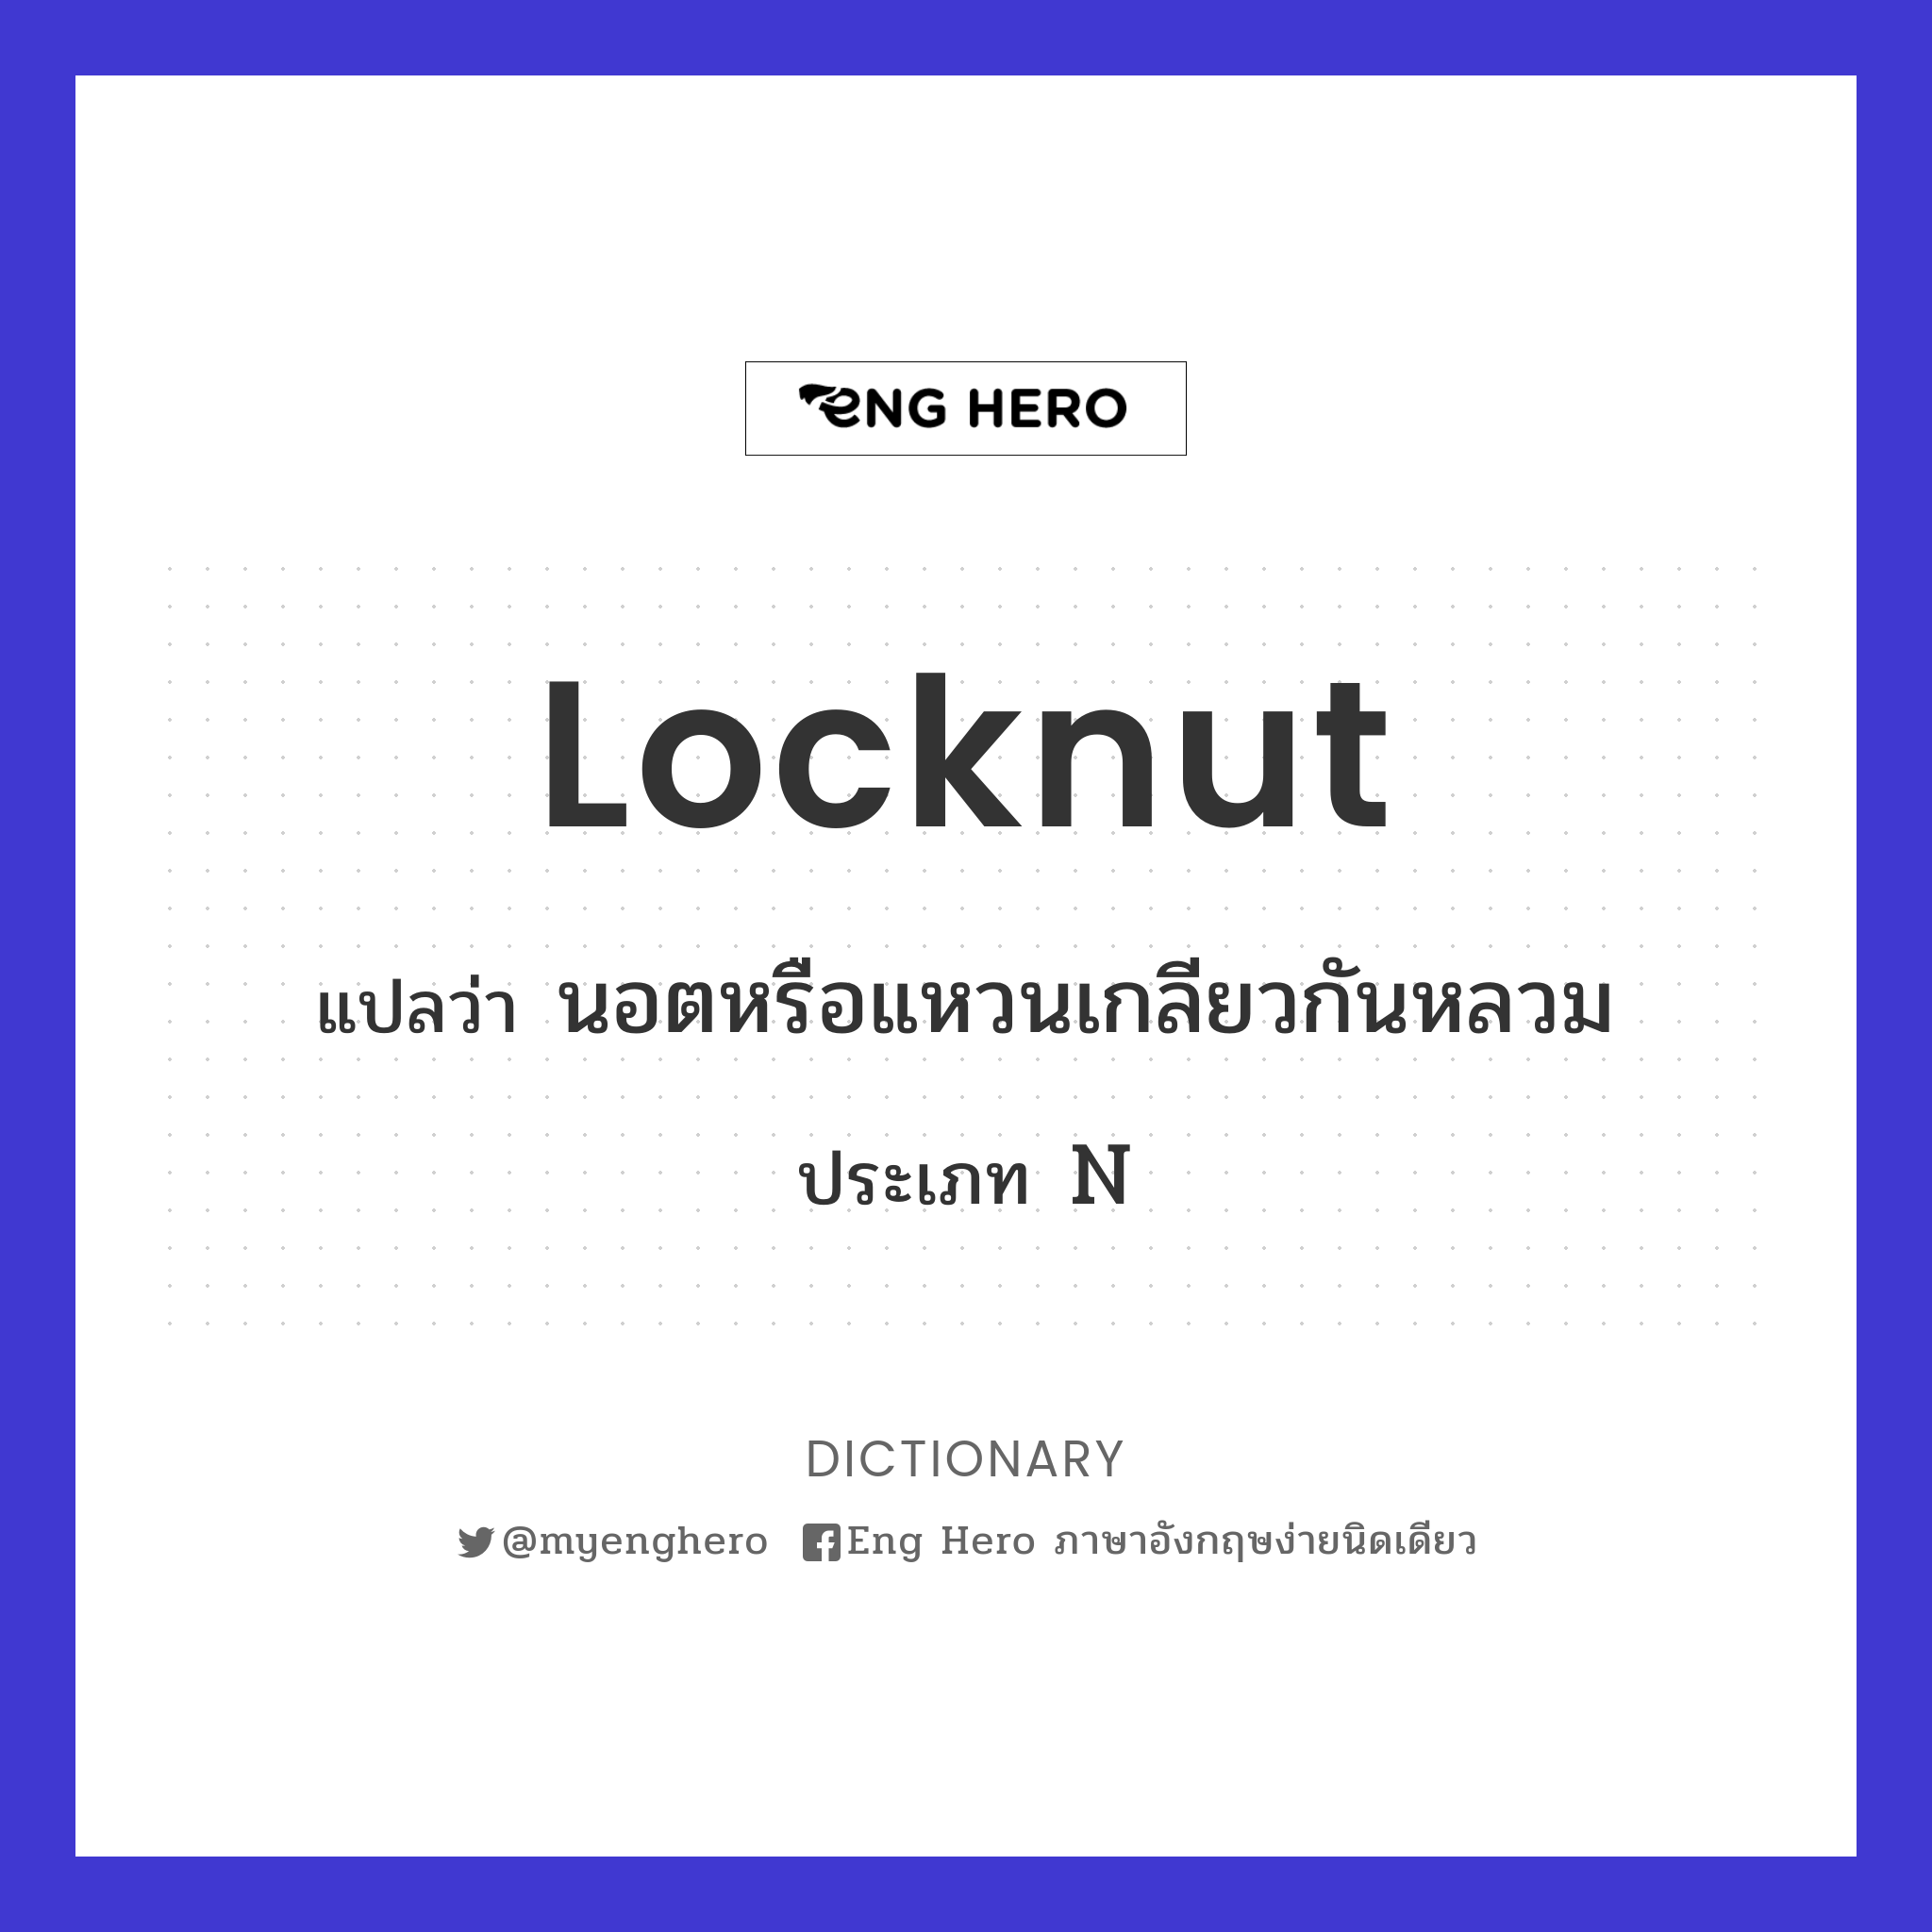 locknut